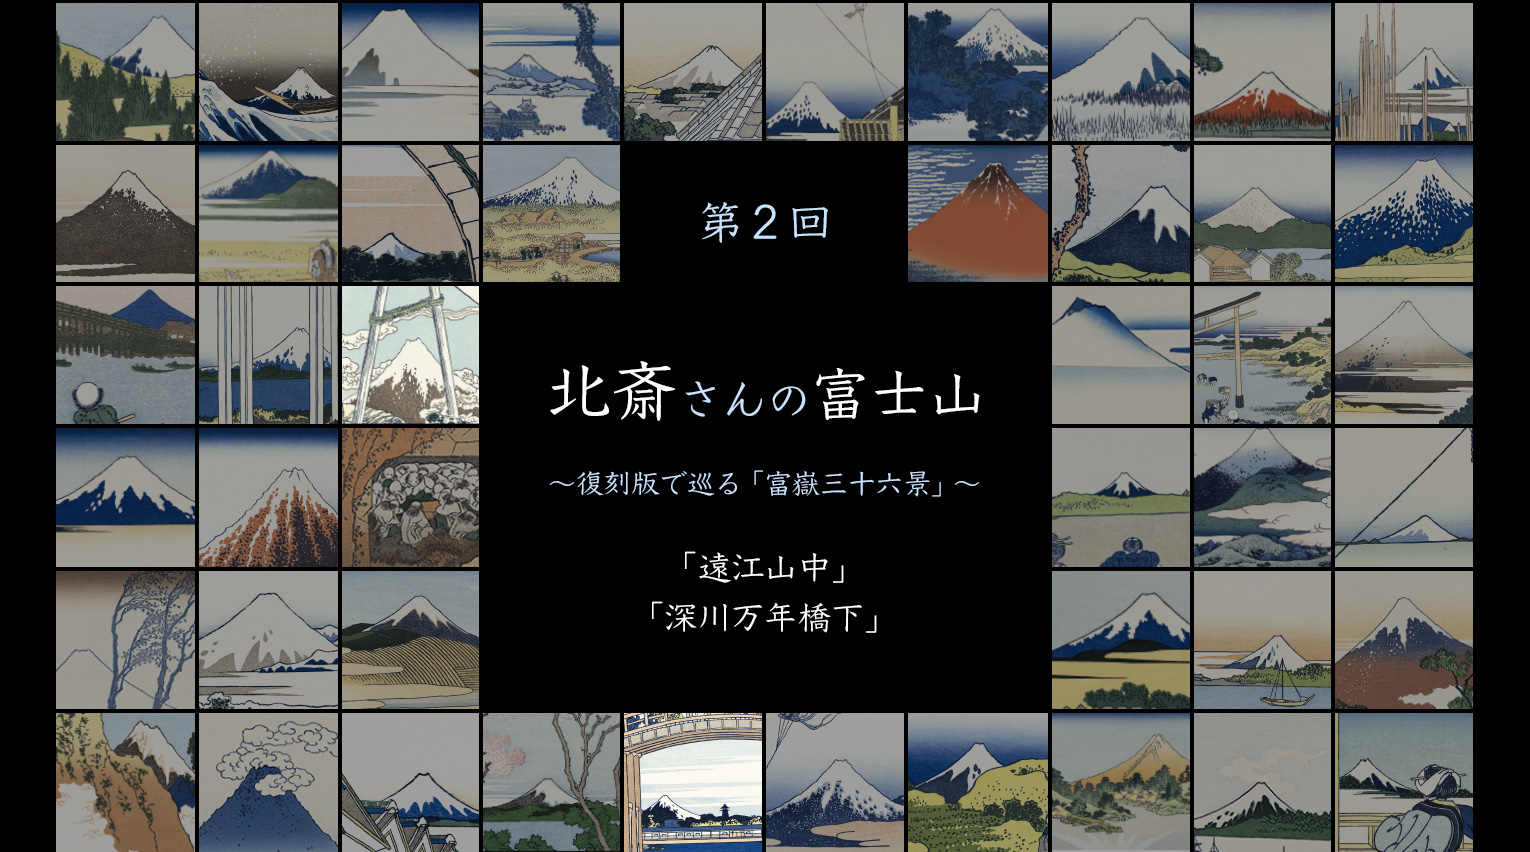 北斎さんの富士山 〜復刻版で巡る「富嶽三十六景」〜 (2)【PR】